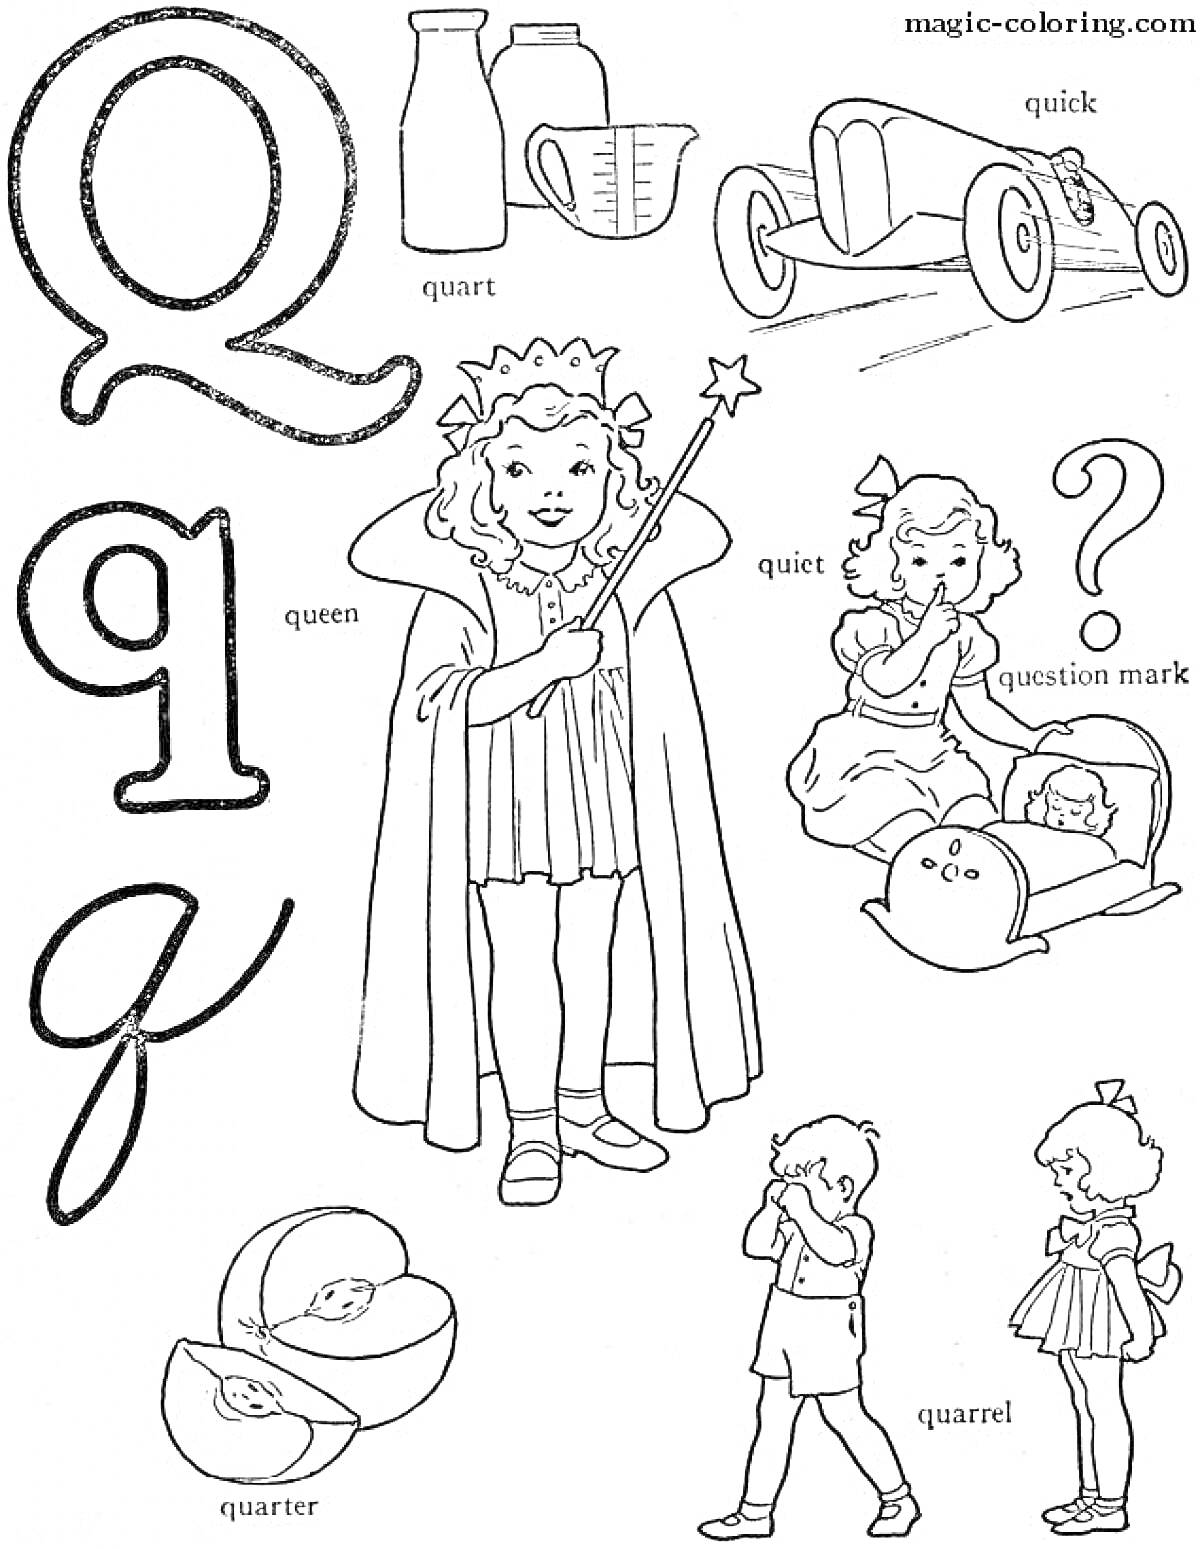 Раскраска Английский алфавит - буква Q: кварта, быстрая машина, королева, тихонький, знак вопроса, четвертак, ссора